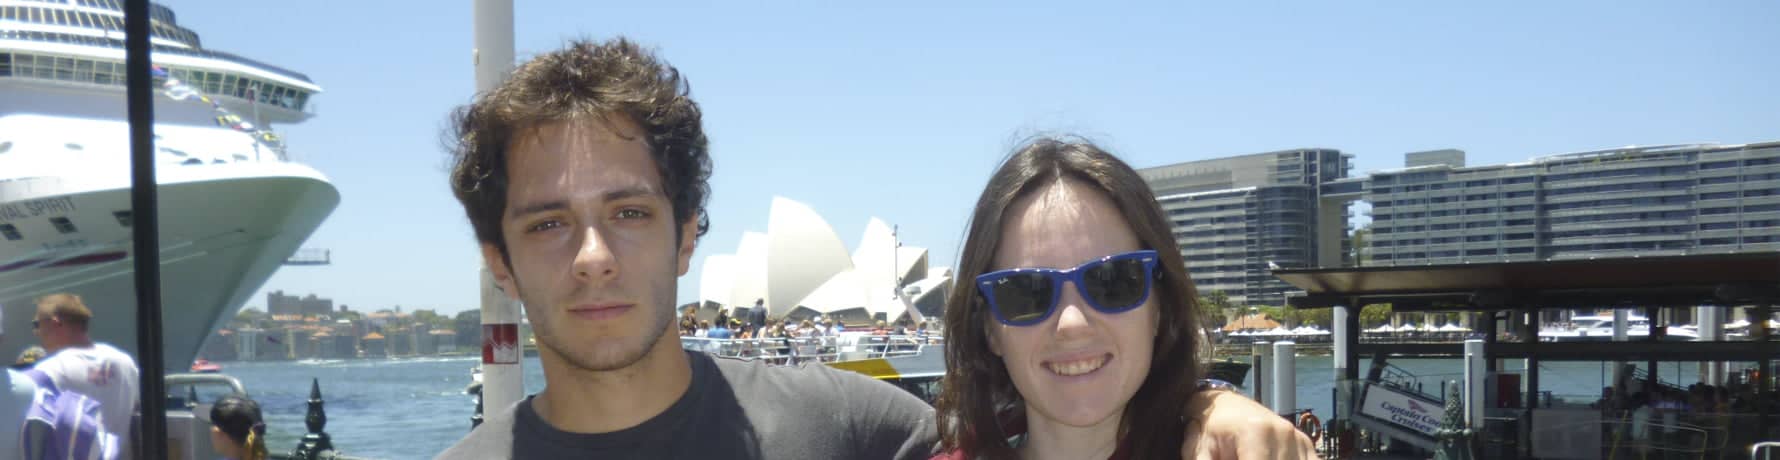 Espanoles en Australia: Guillermo en Sydney